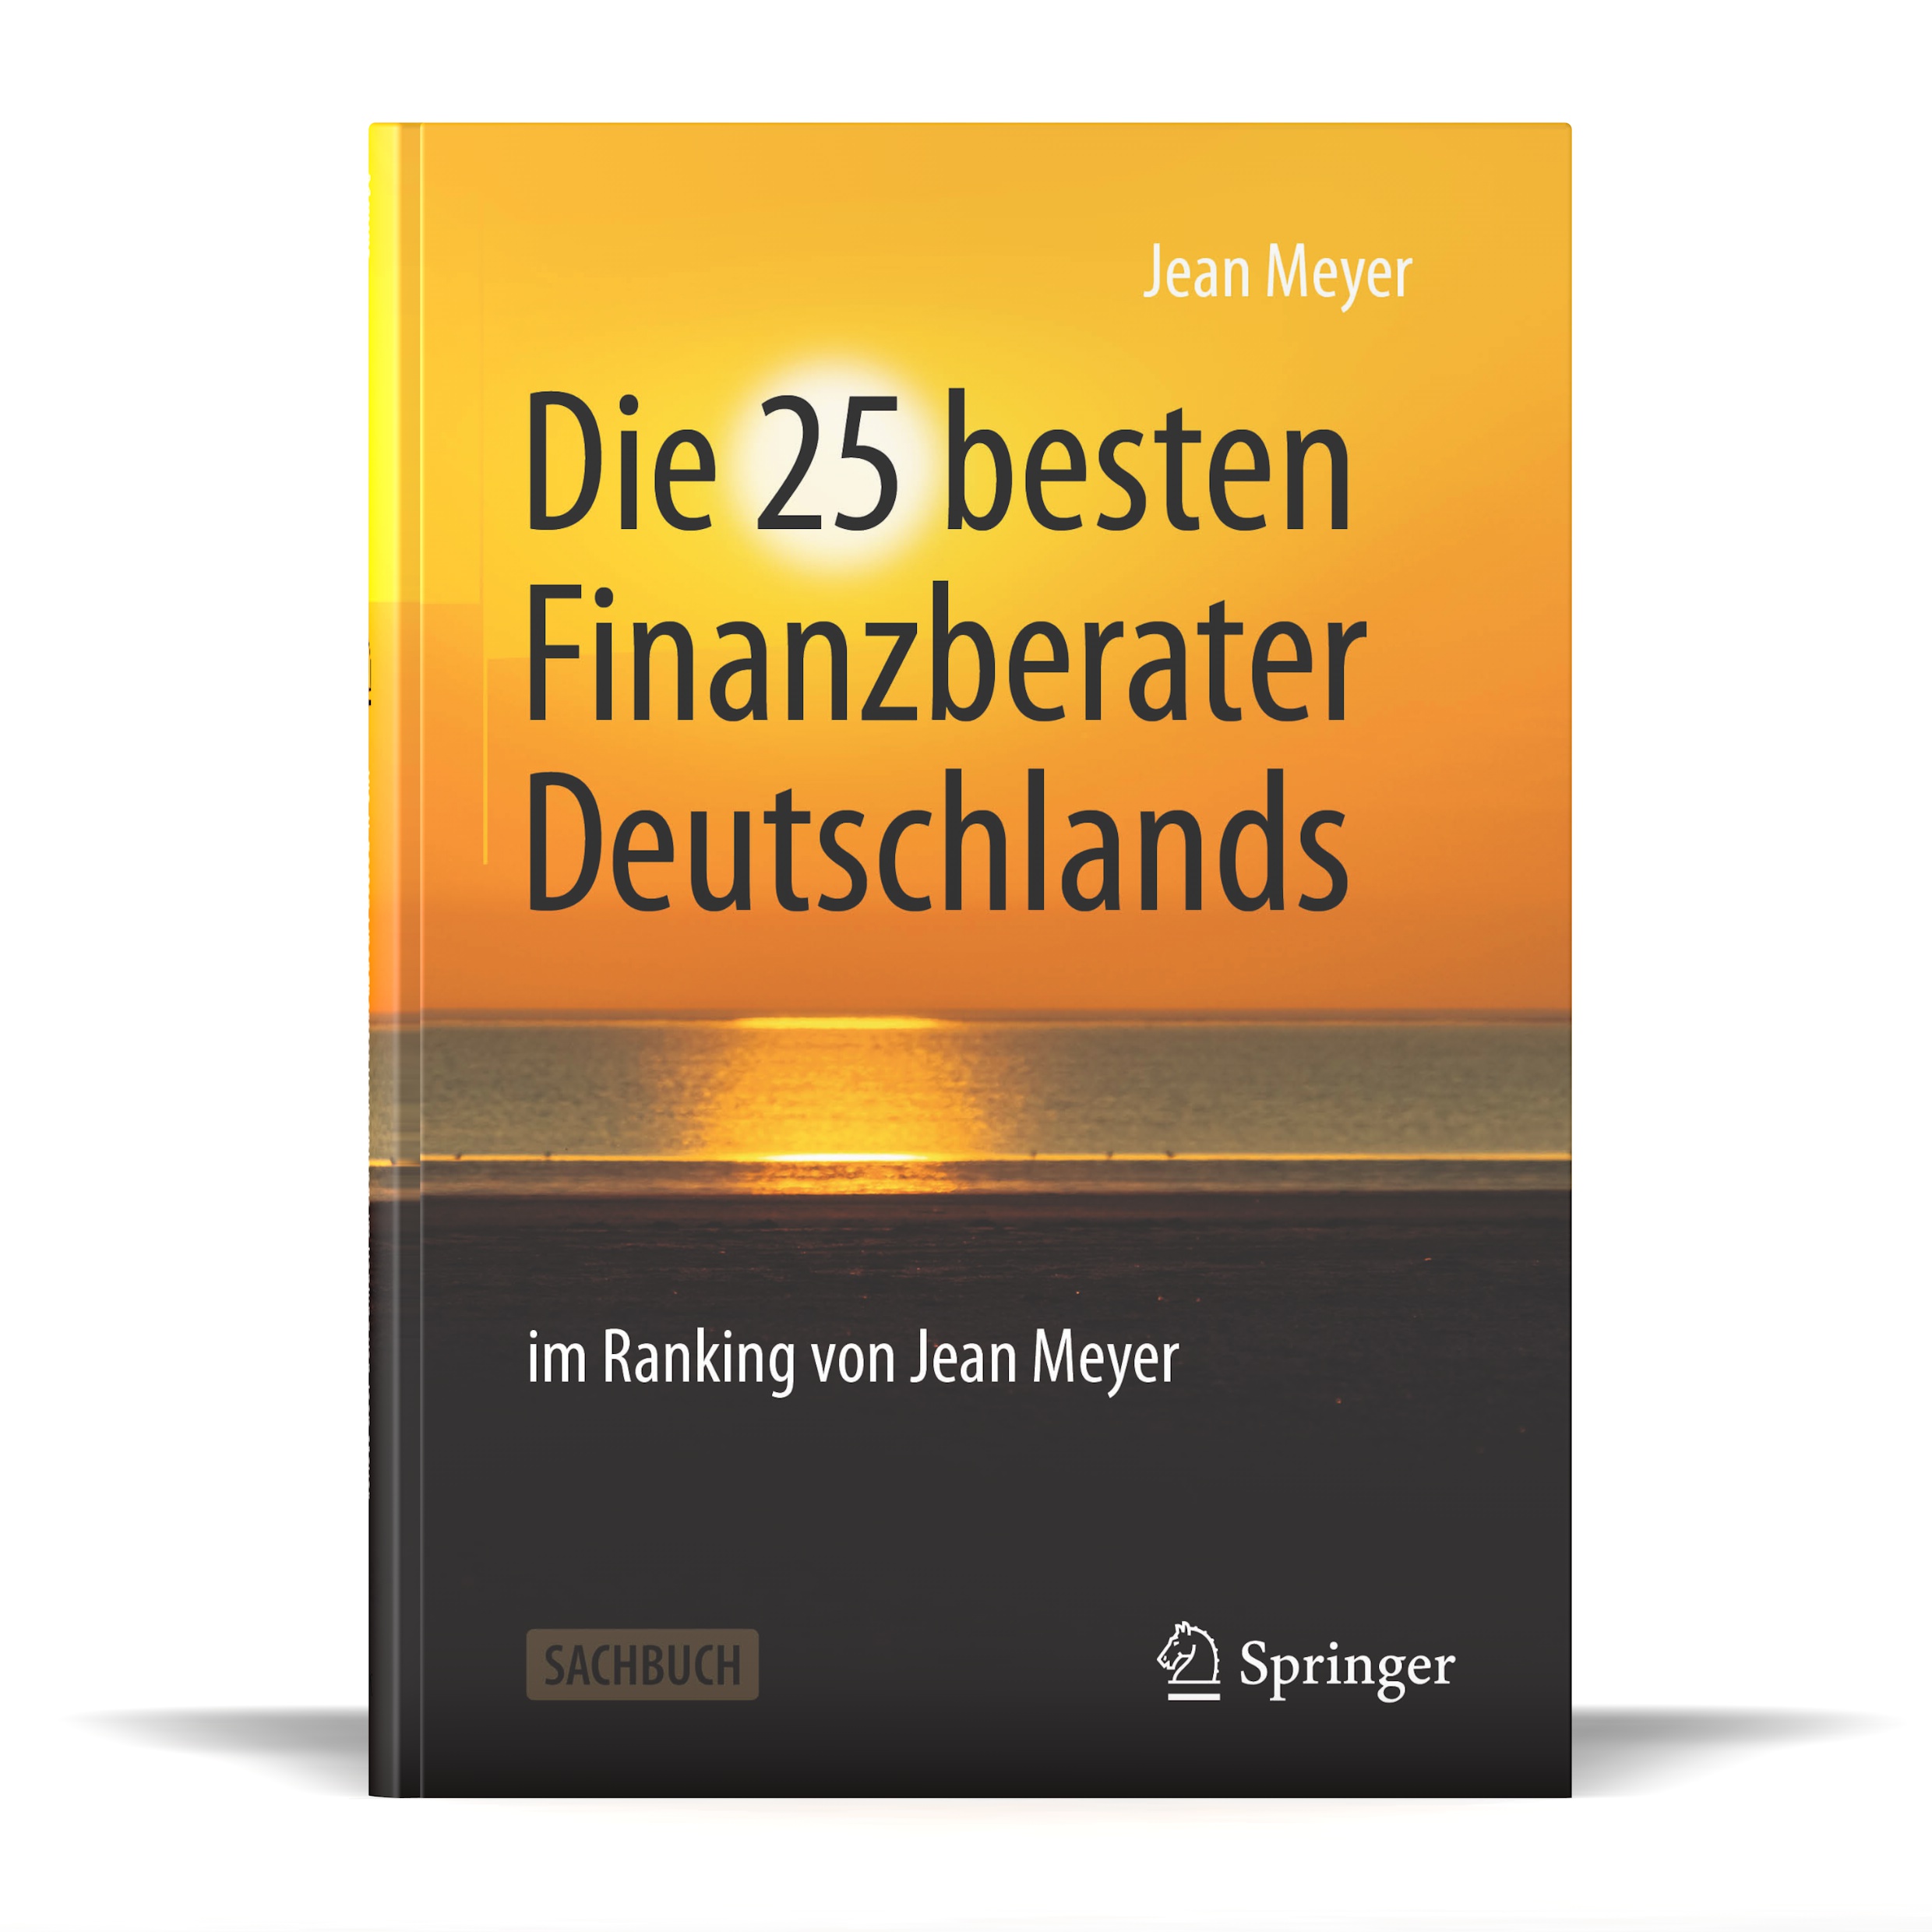 Neuerscheinung des Buches „Die 25 besten Finanzberater Deutschlands“ bei Springer